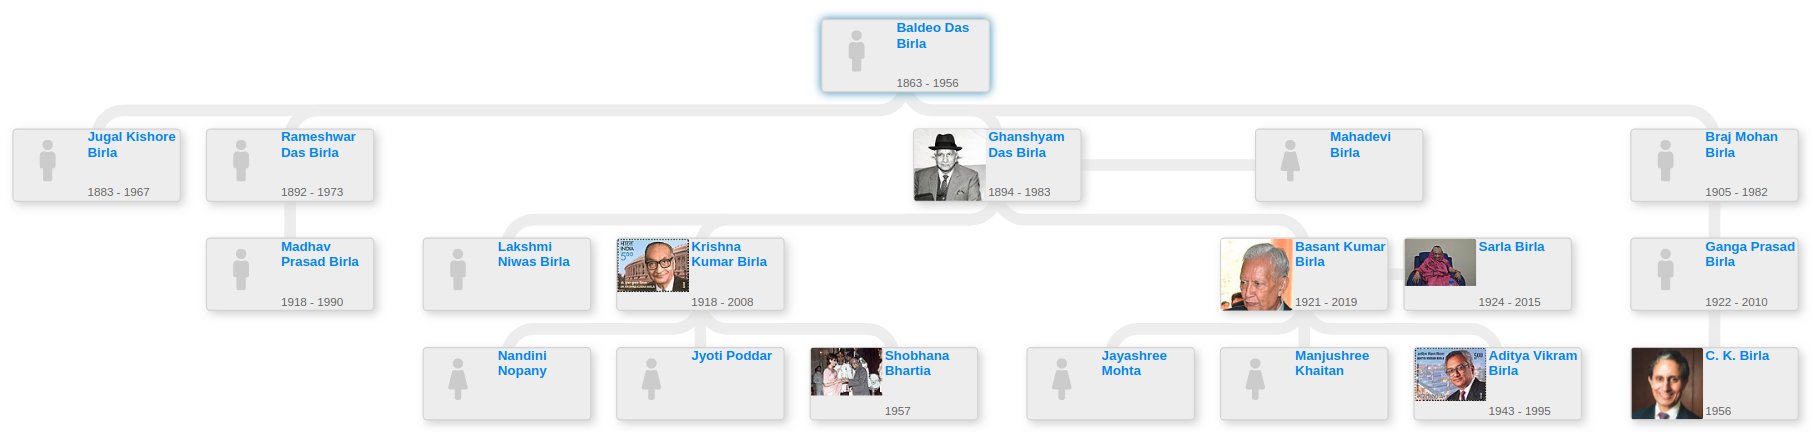 Birla family tree - Blog for Entitree